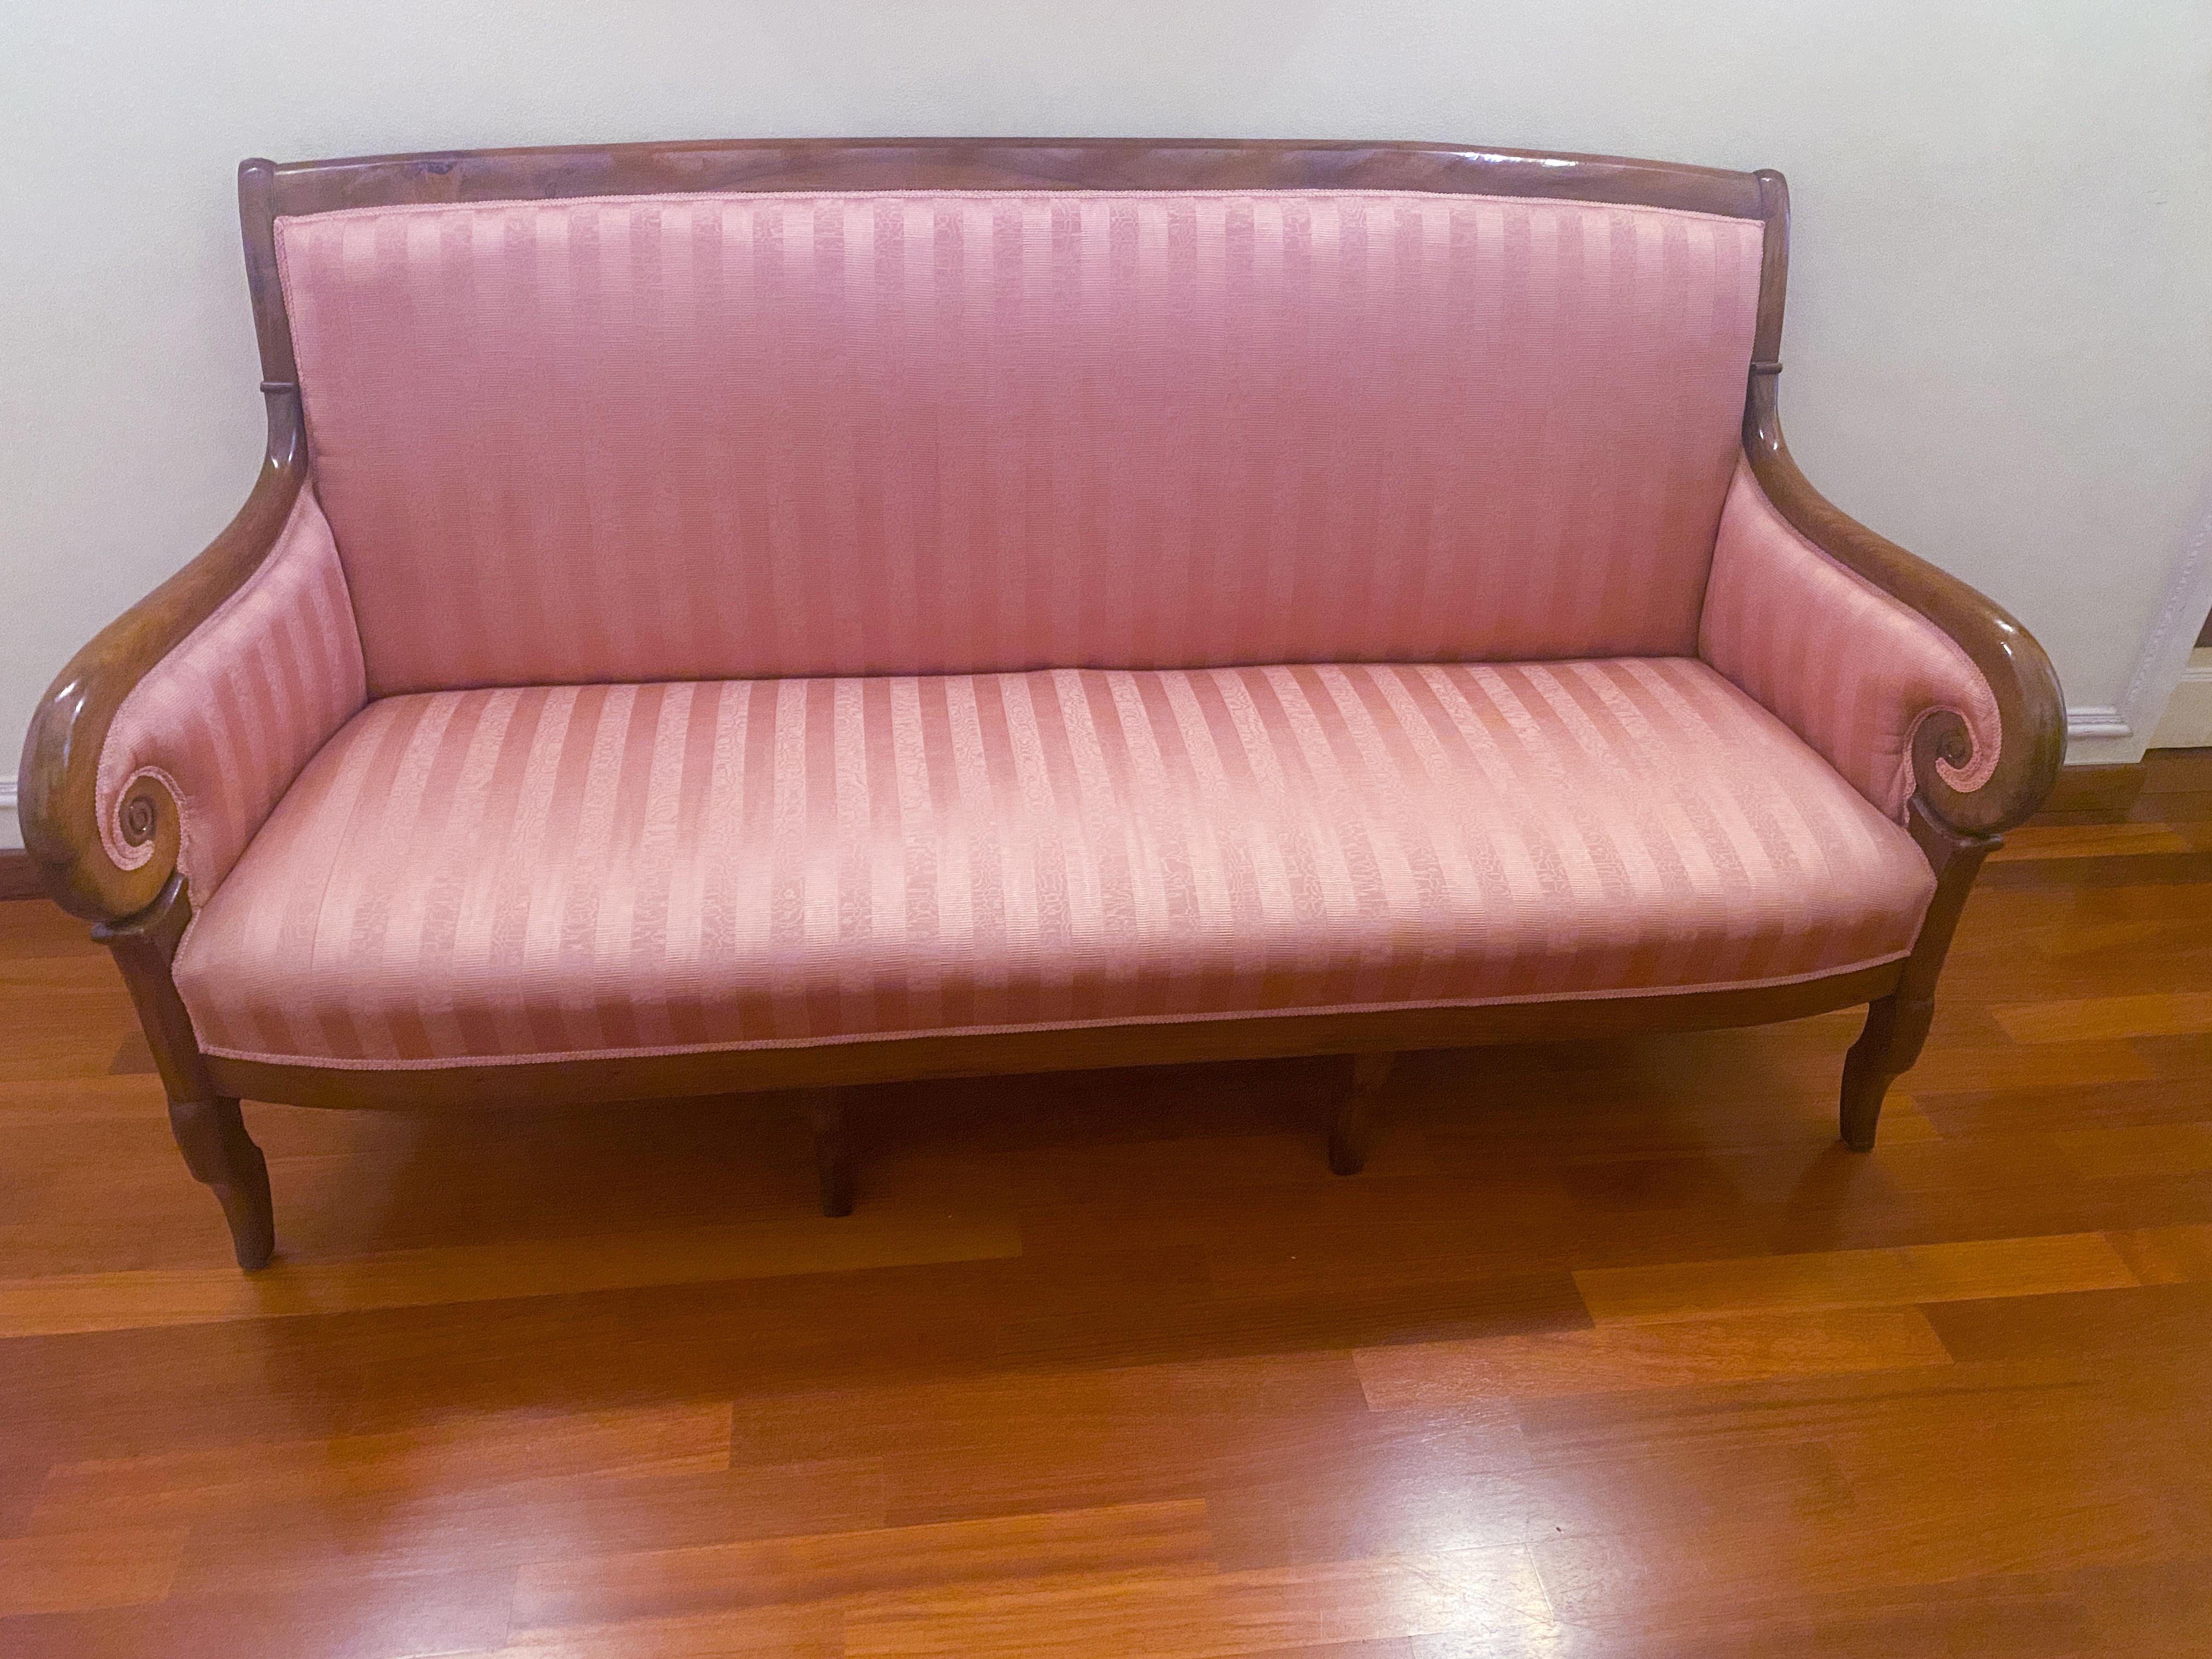 Prächtige antike Couch in der Epoche der Restaurierung, aus der Francia von 1830. Die elegante Linie dieses Diwans stellt in hervorragender Weise die typischen Merkmale der Epoche dar: gebogene Braccioli, Sostegni a sciabola, schienale dolcemente